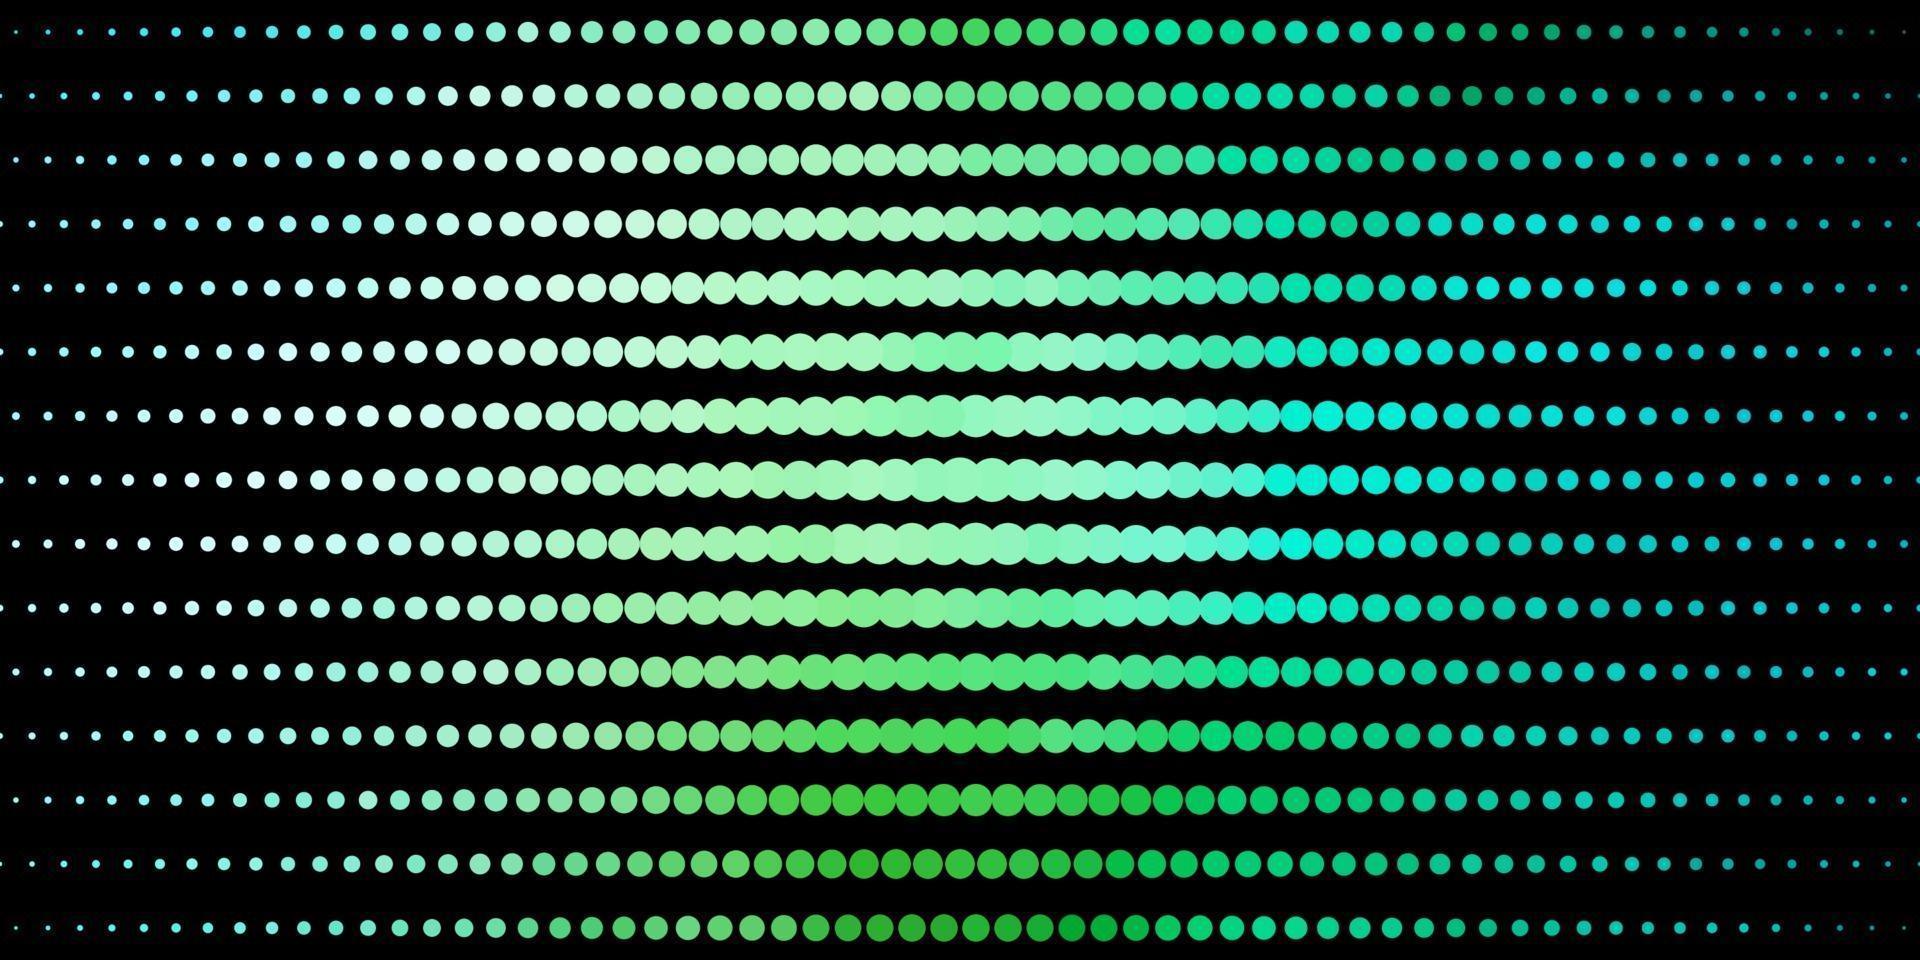 ljusblå, grön vektor bakgrund med cirklar.